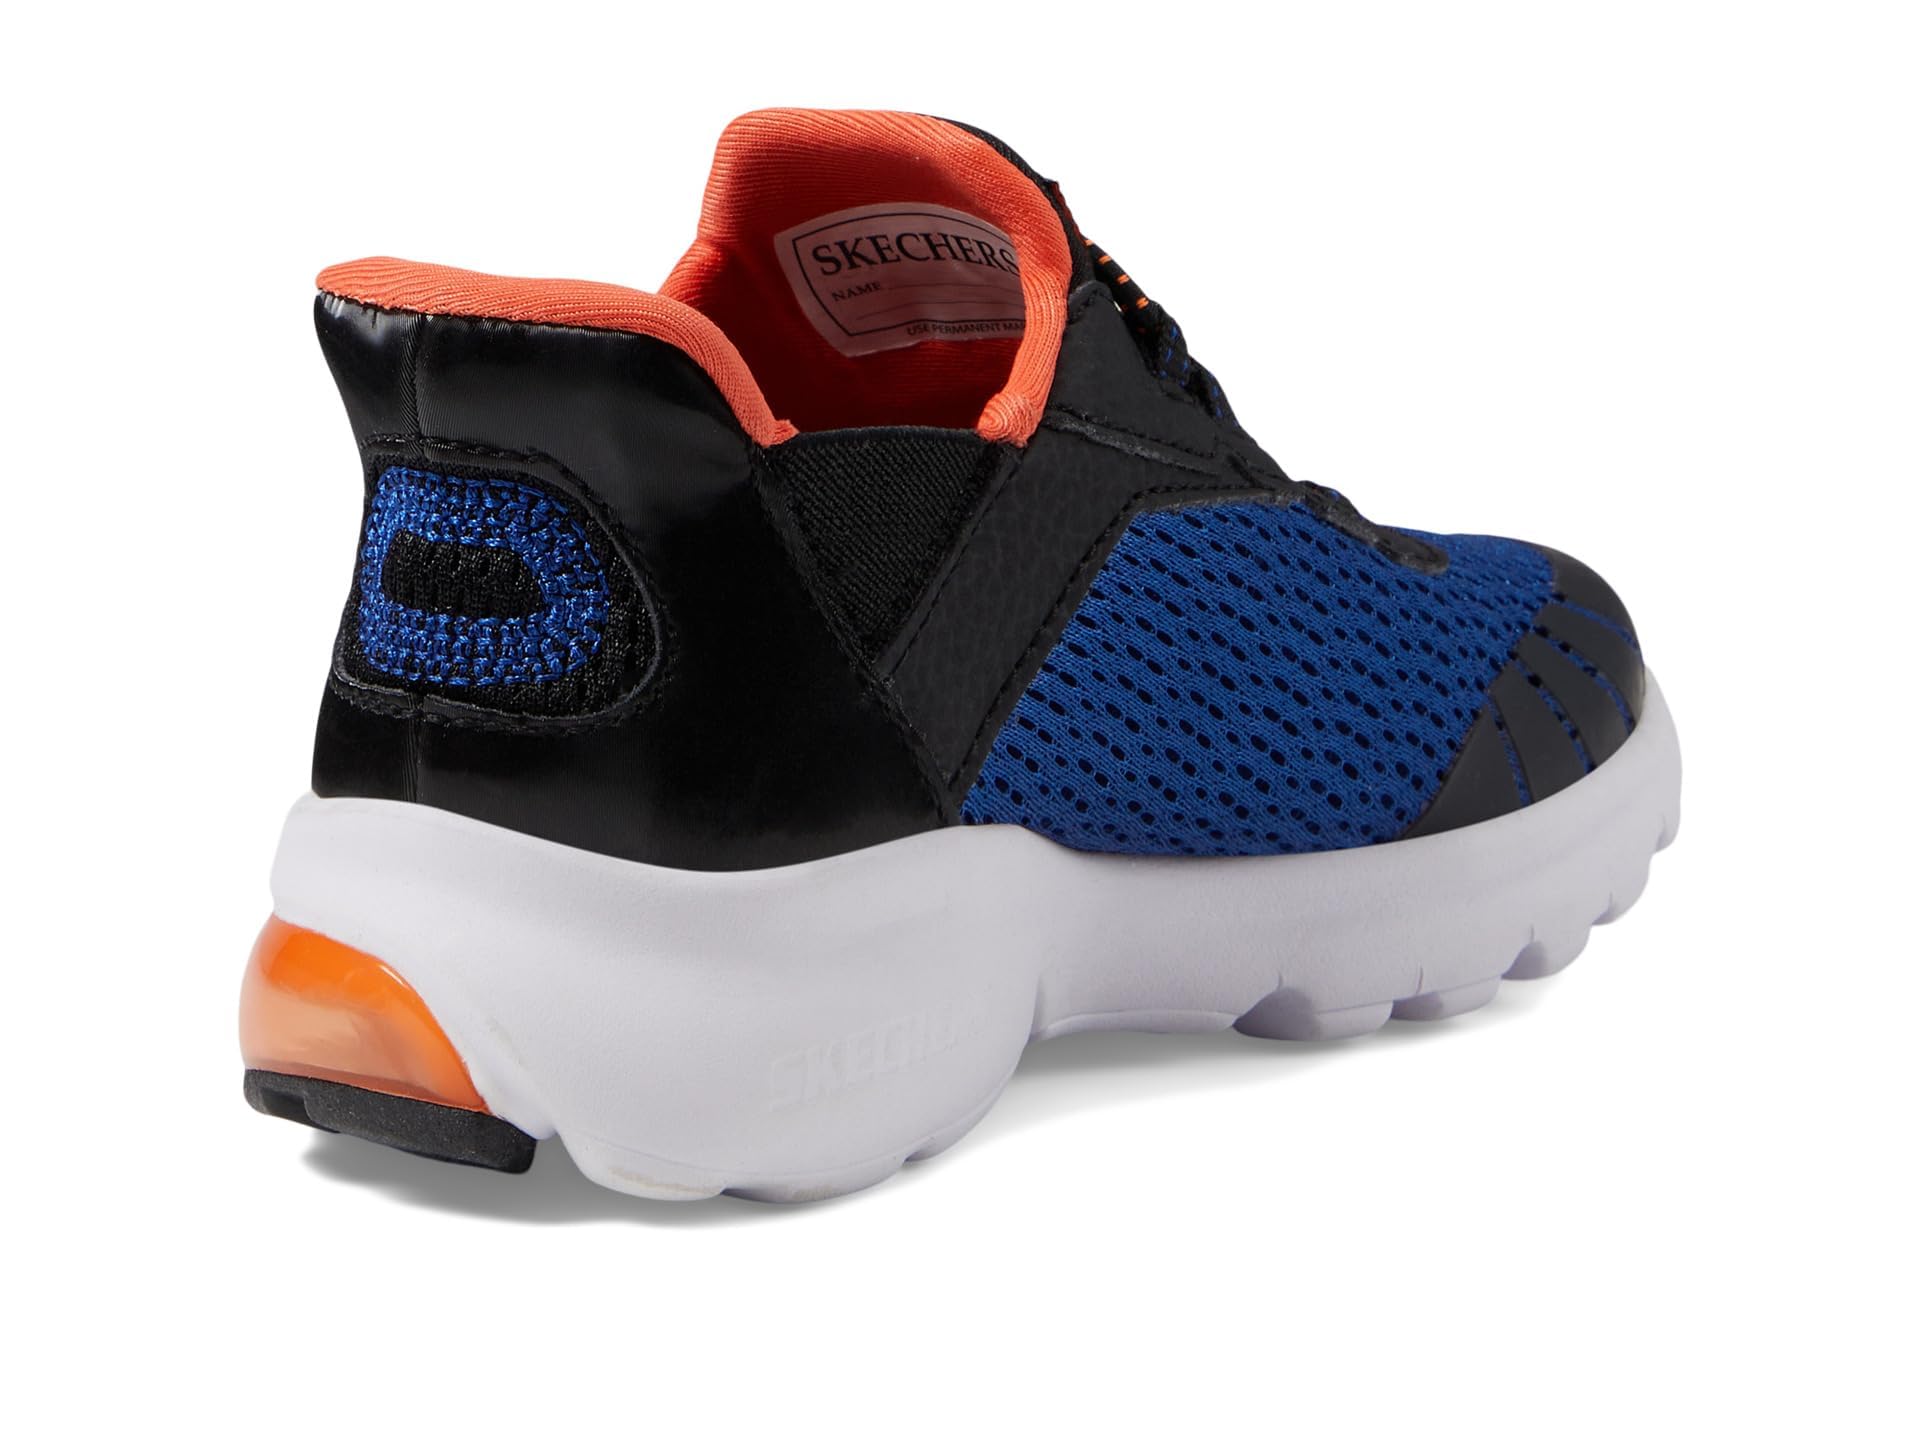 Skechers Unisex-Child Razor Air-Hyper-Brisk Sneaker